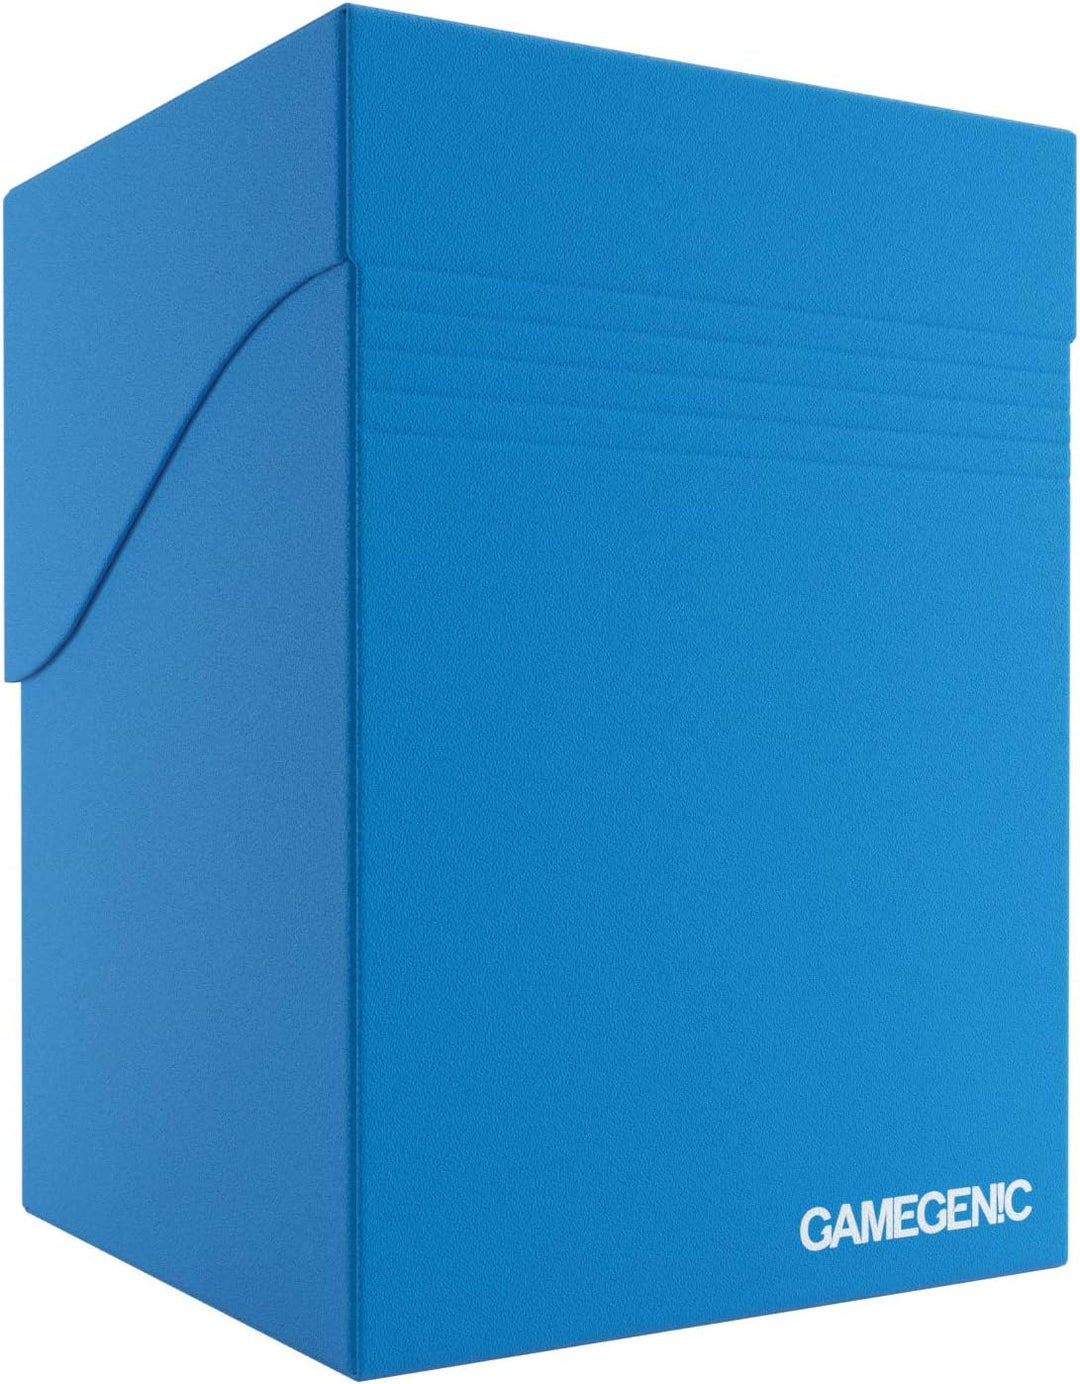 Gamegenic 100-Card Deck Holder, Blue